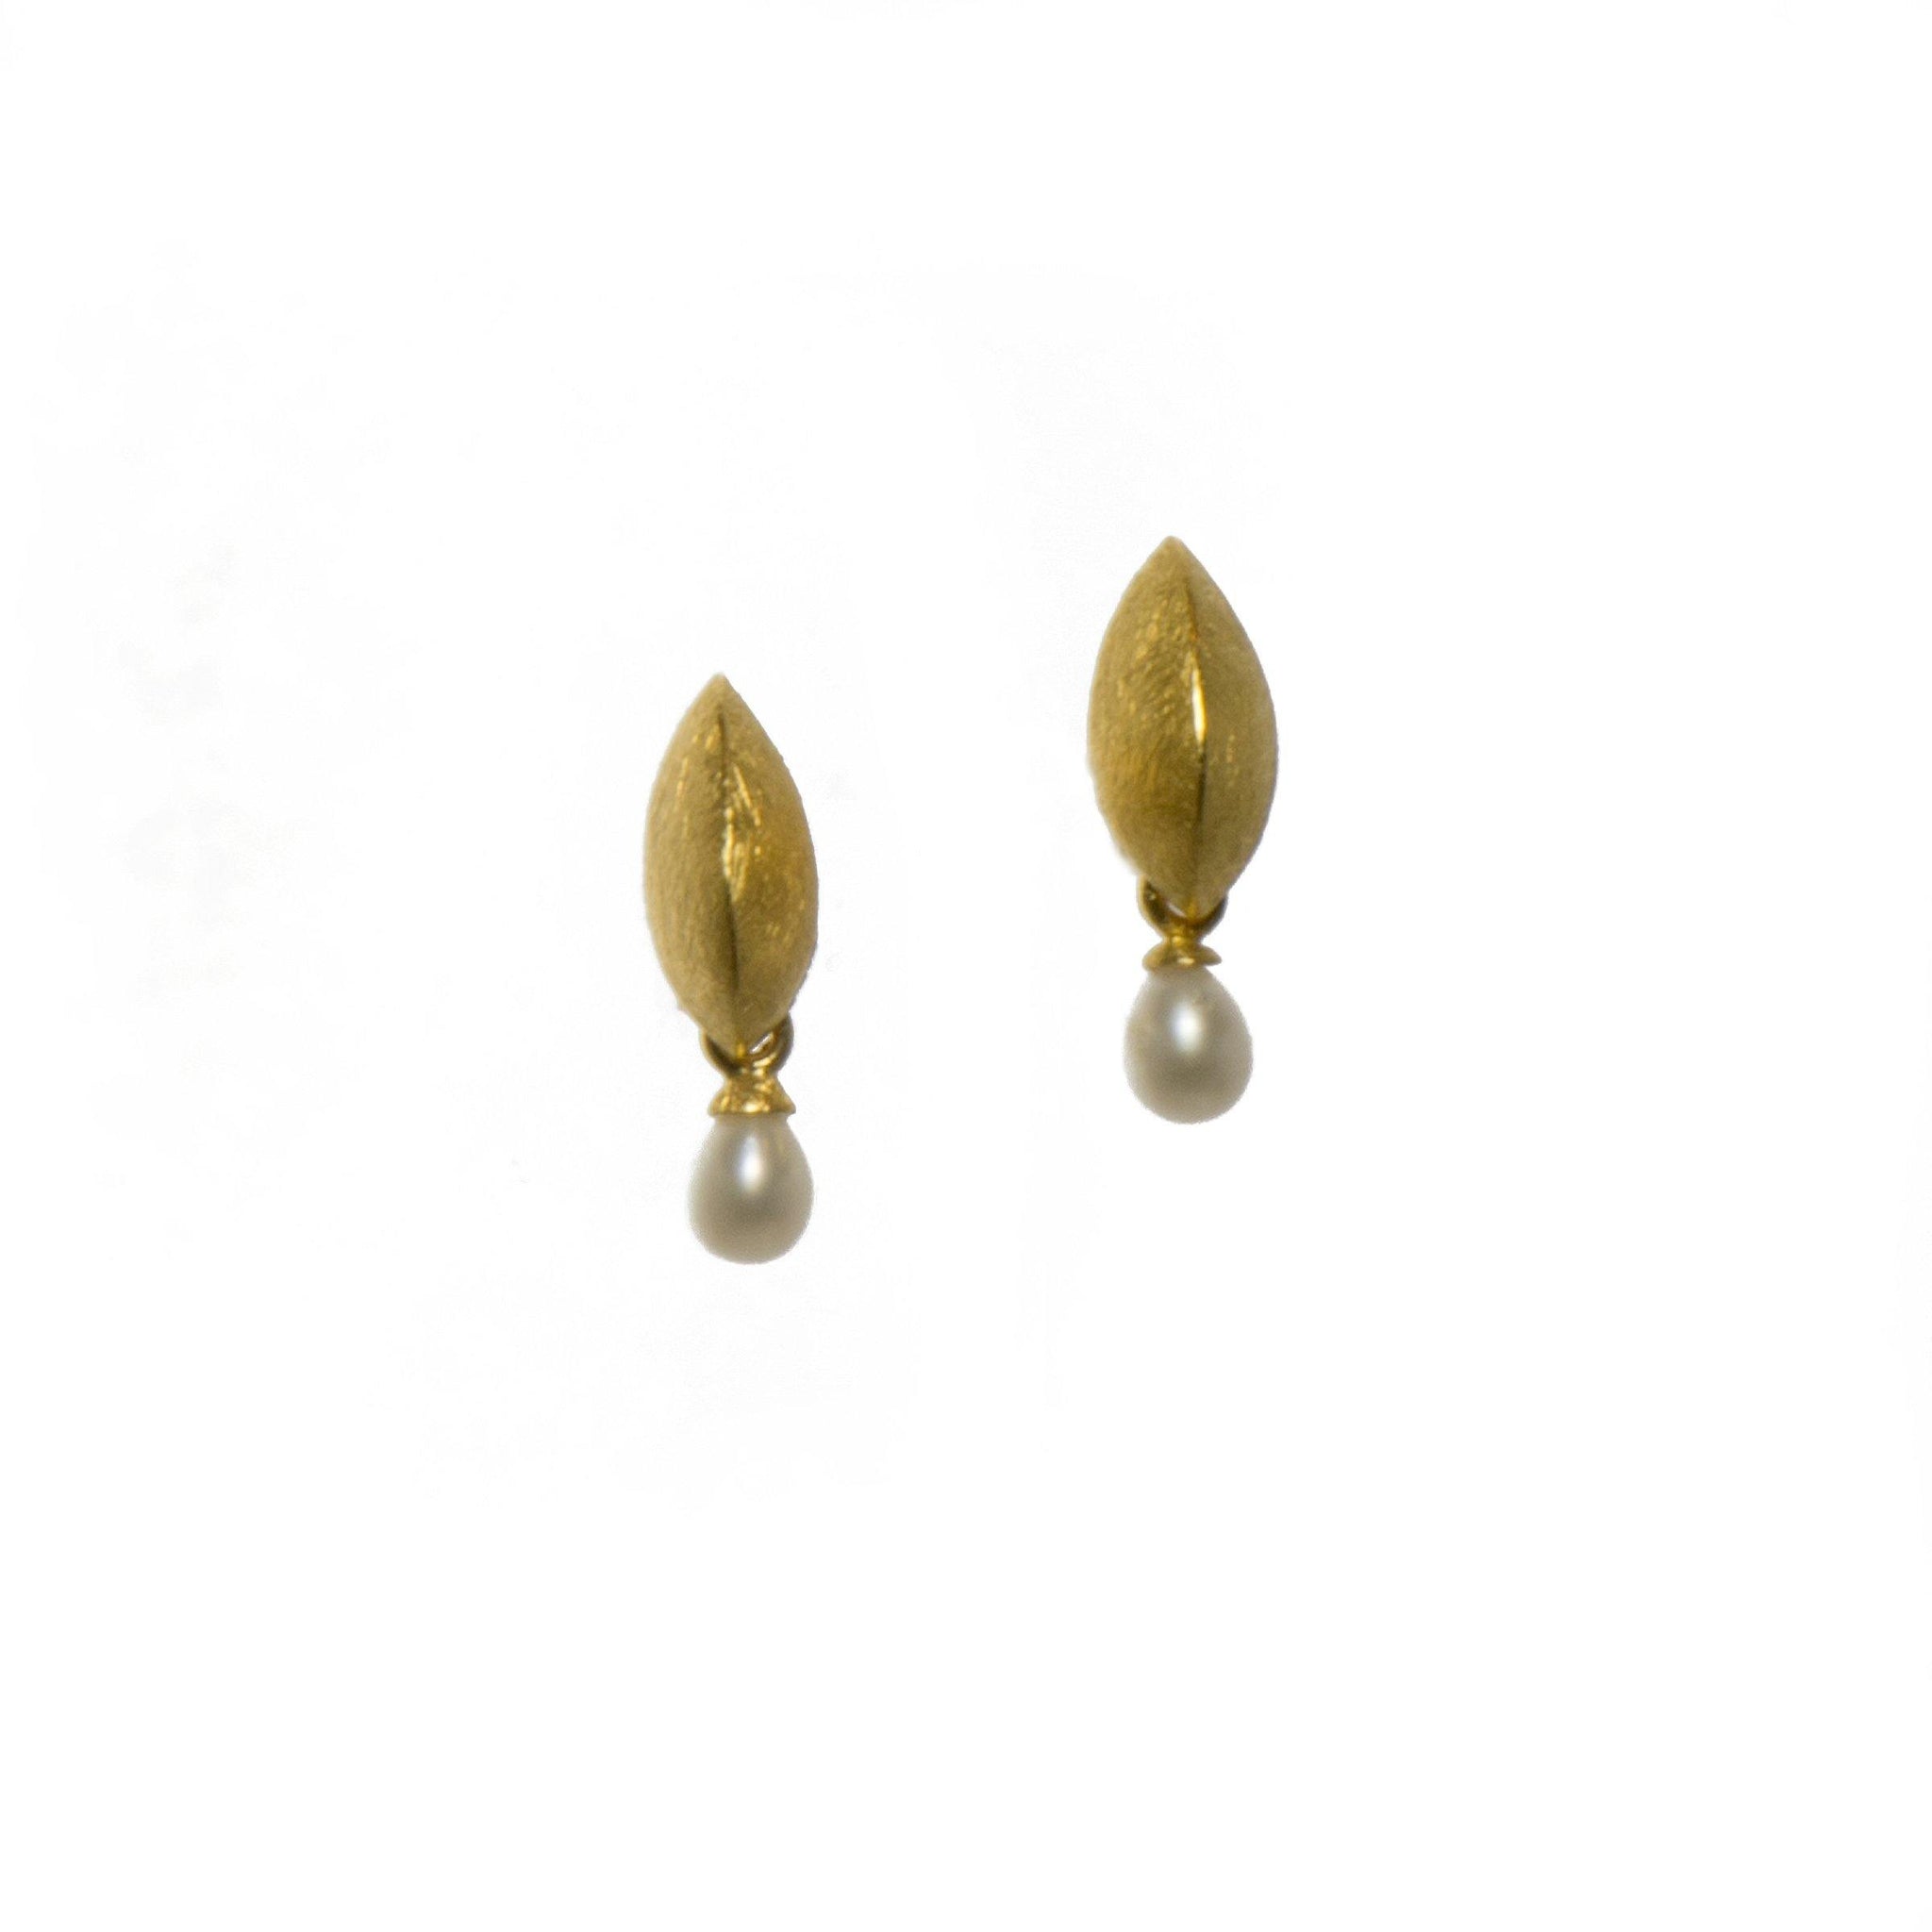 LEAF WHITE PEARL EARRINGS FAIR TRADE 24K GOLD VERMEIL - Joyla Jewelry